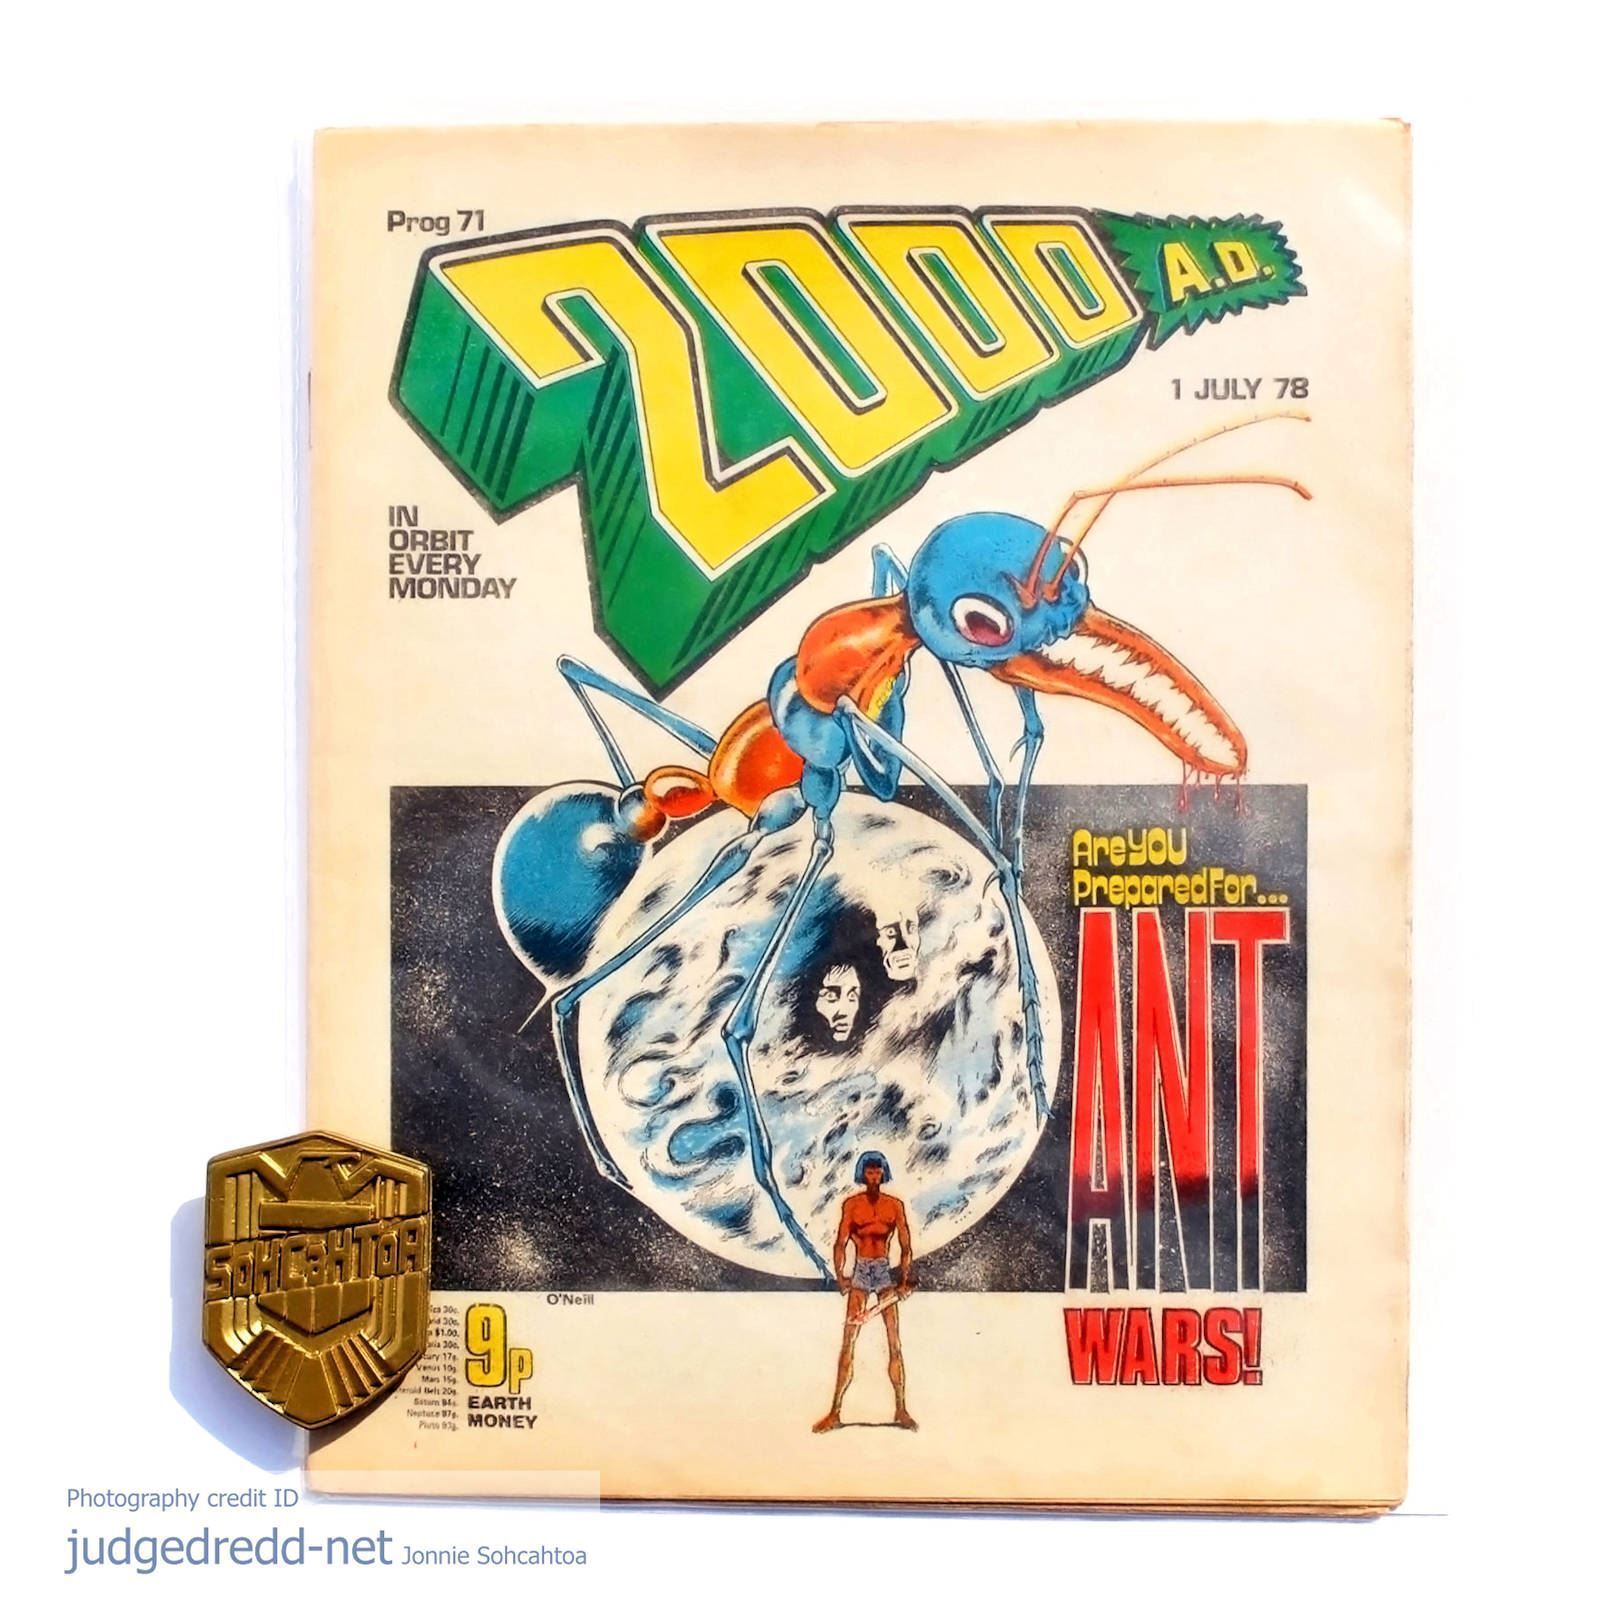 2000AD Prog 68-73 Brian Bolland Art All 6 Judge Dredd Comics 1978 a good gift UK